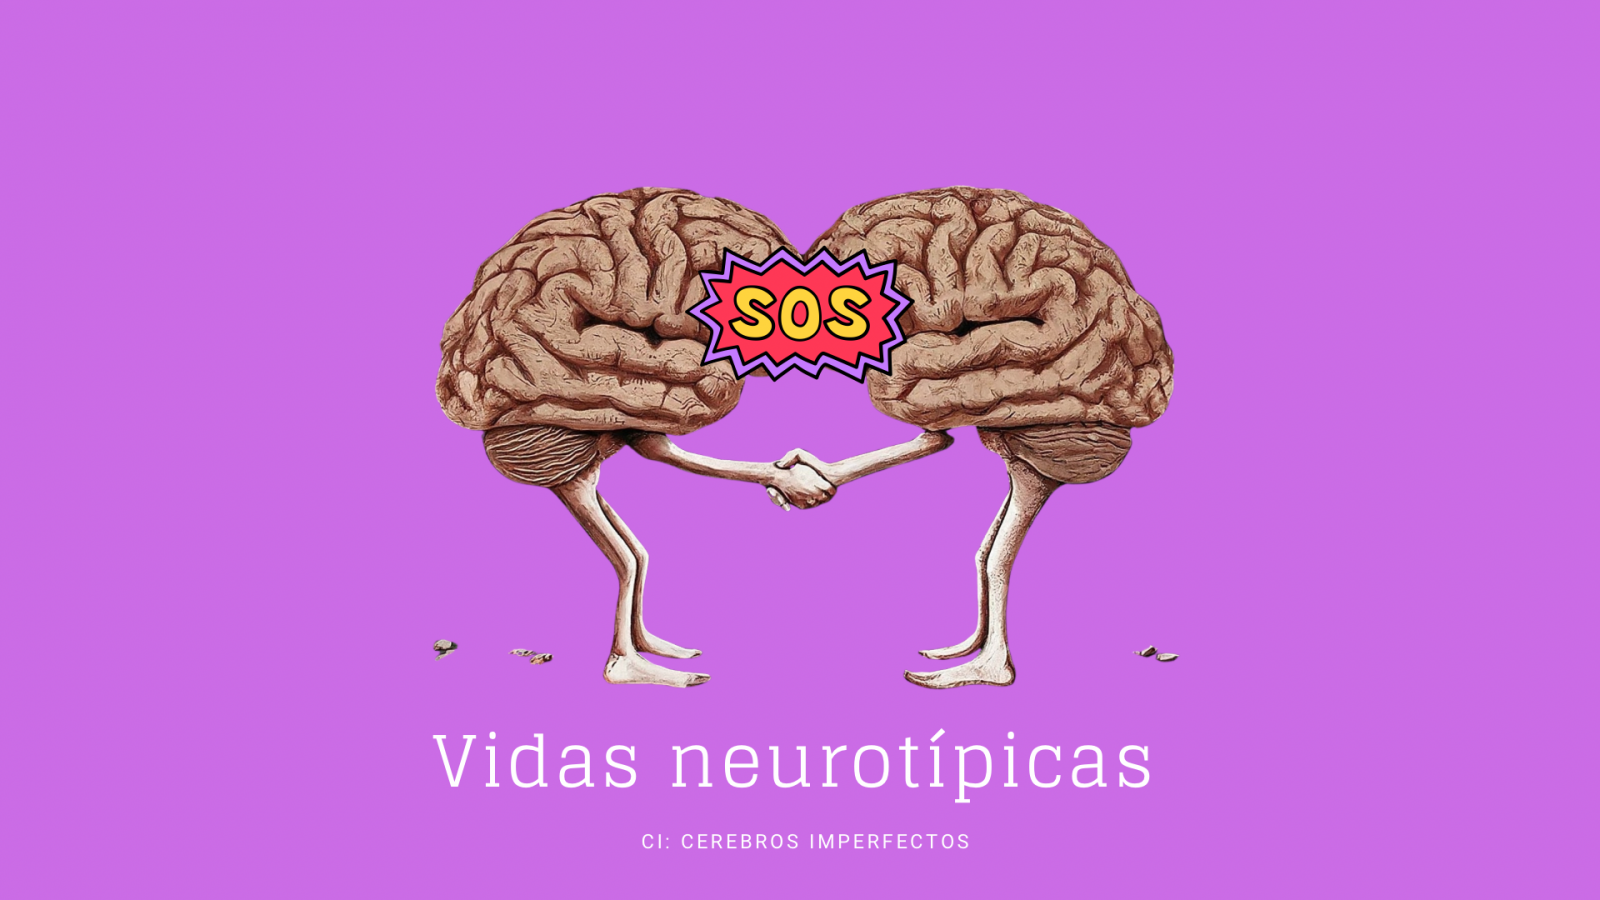 Cerebros imperfectos - Vidas Neurot�picas: El neurot�pico en el mundo de la neurodivergencia - Escuchar ahora